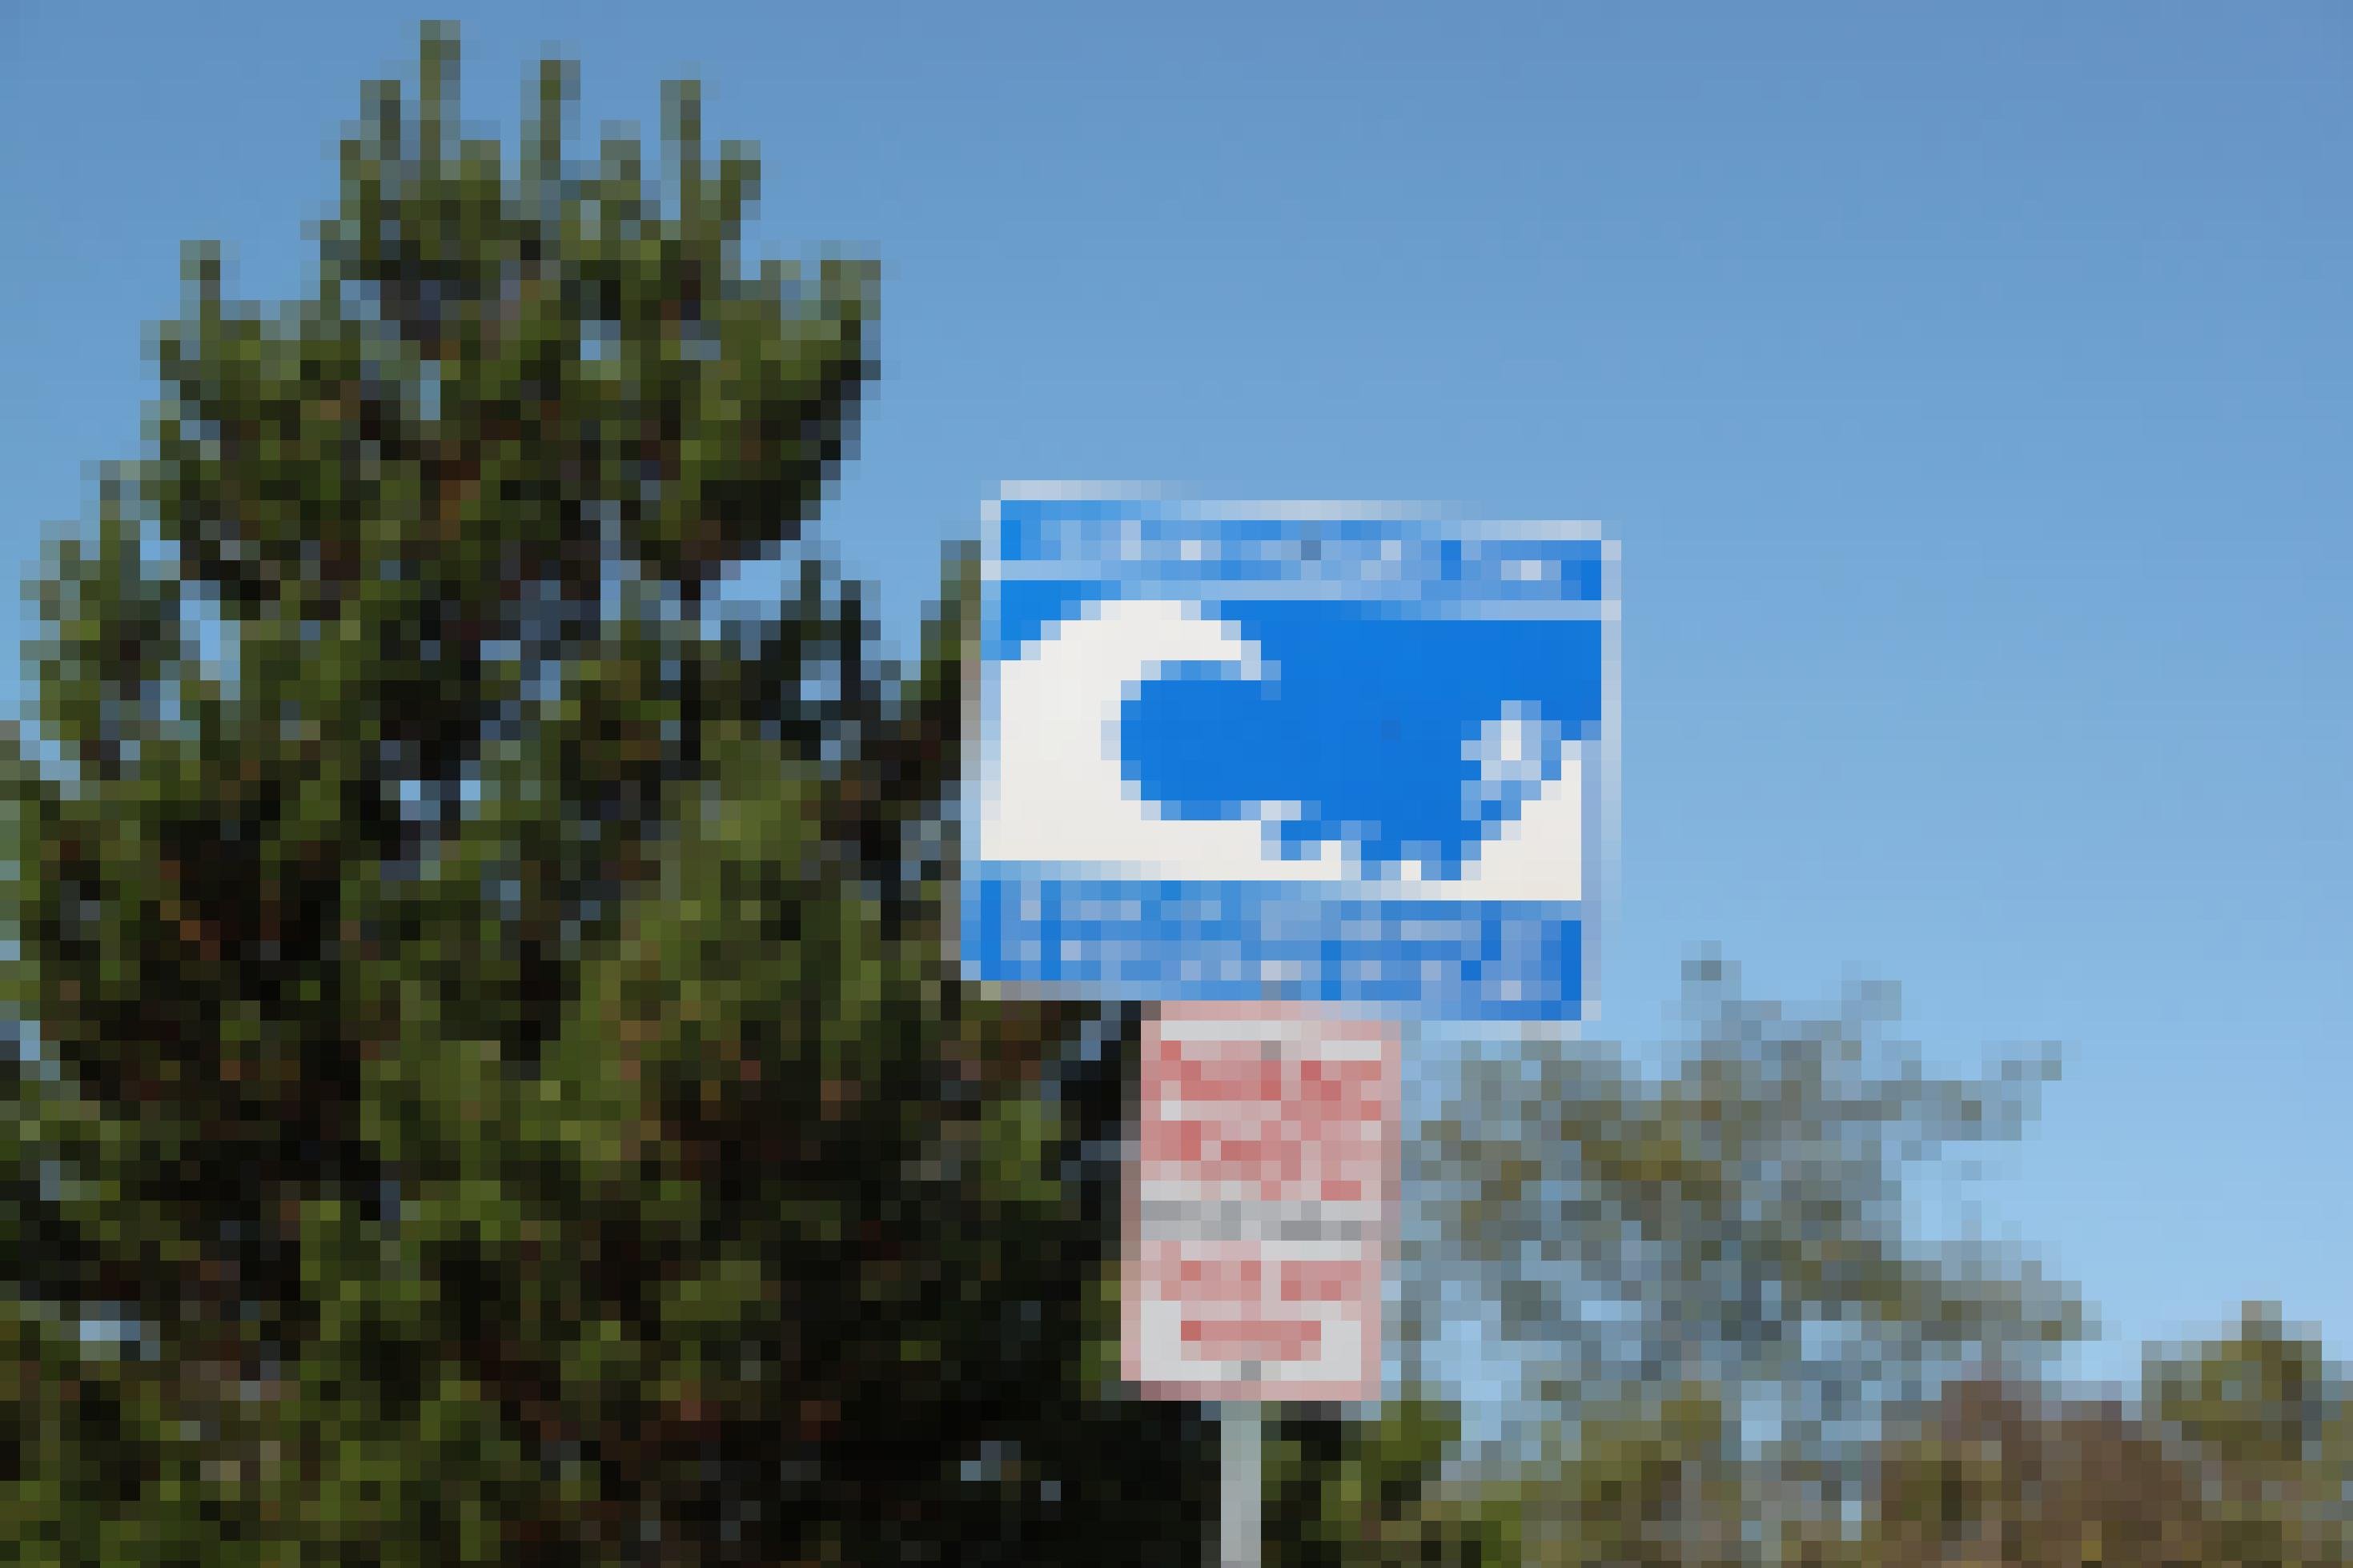 Ein blaues Tsunami-Warnschild vor Bäumen und blauem Himmel.